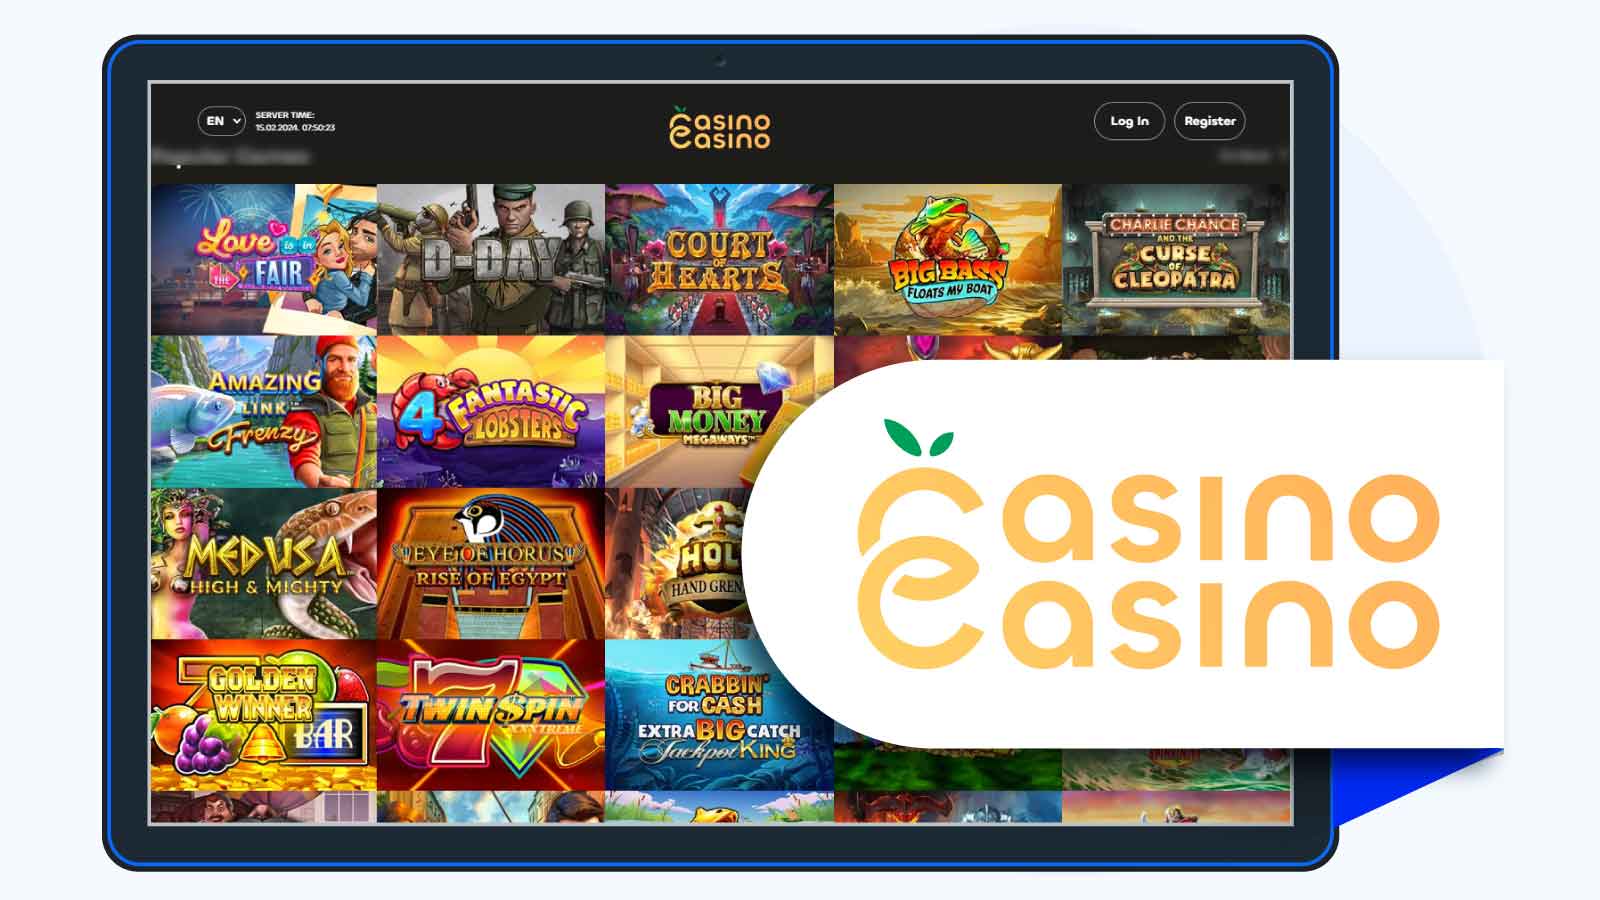 CasinoCasino – Best L&L Europe Casino for Deposit bonuses